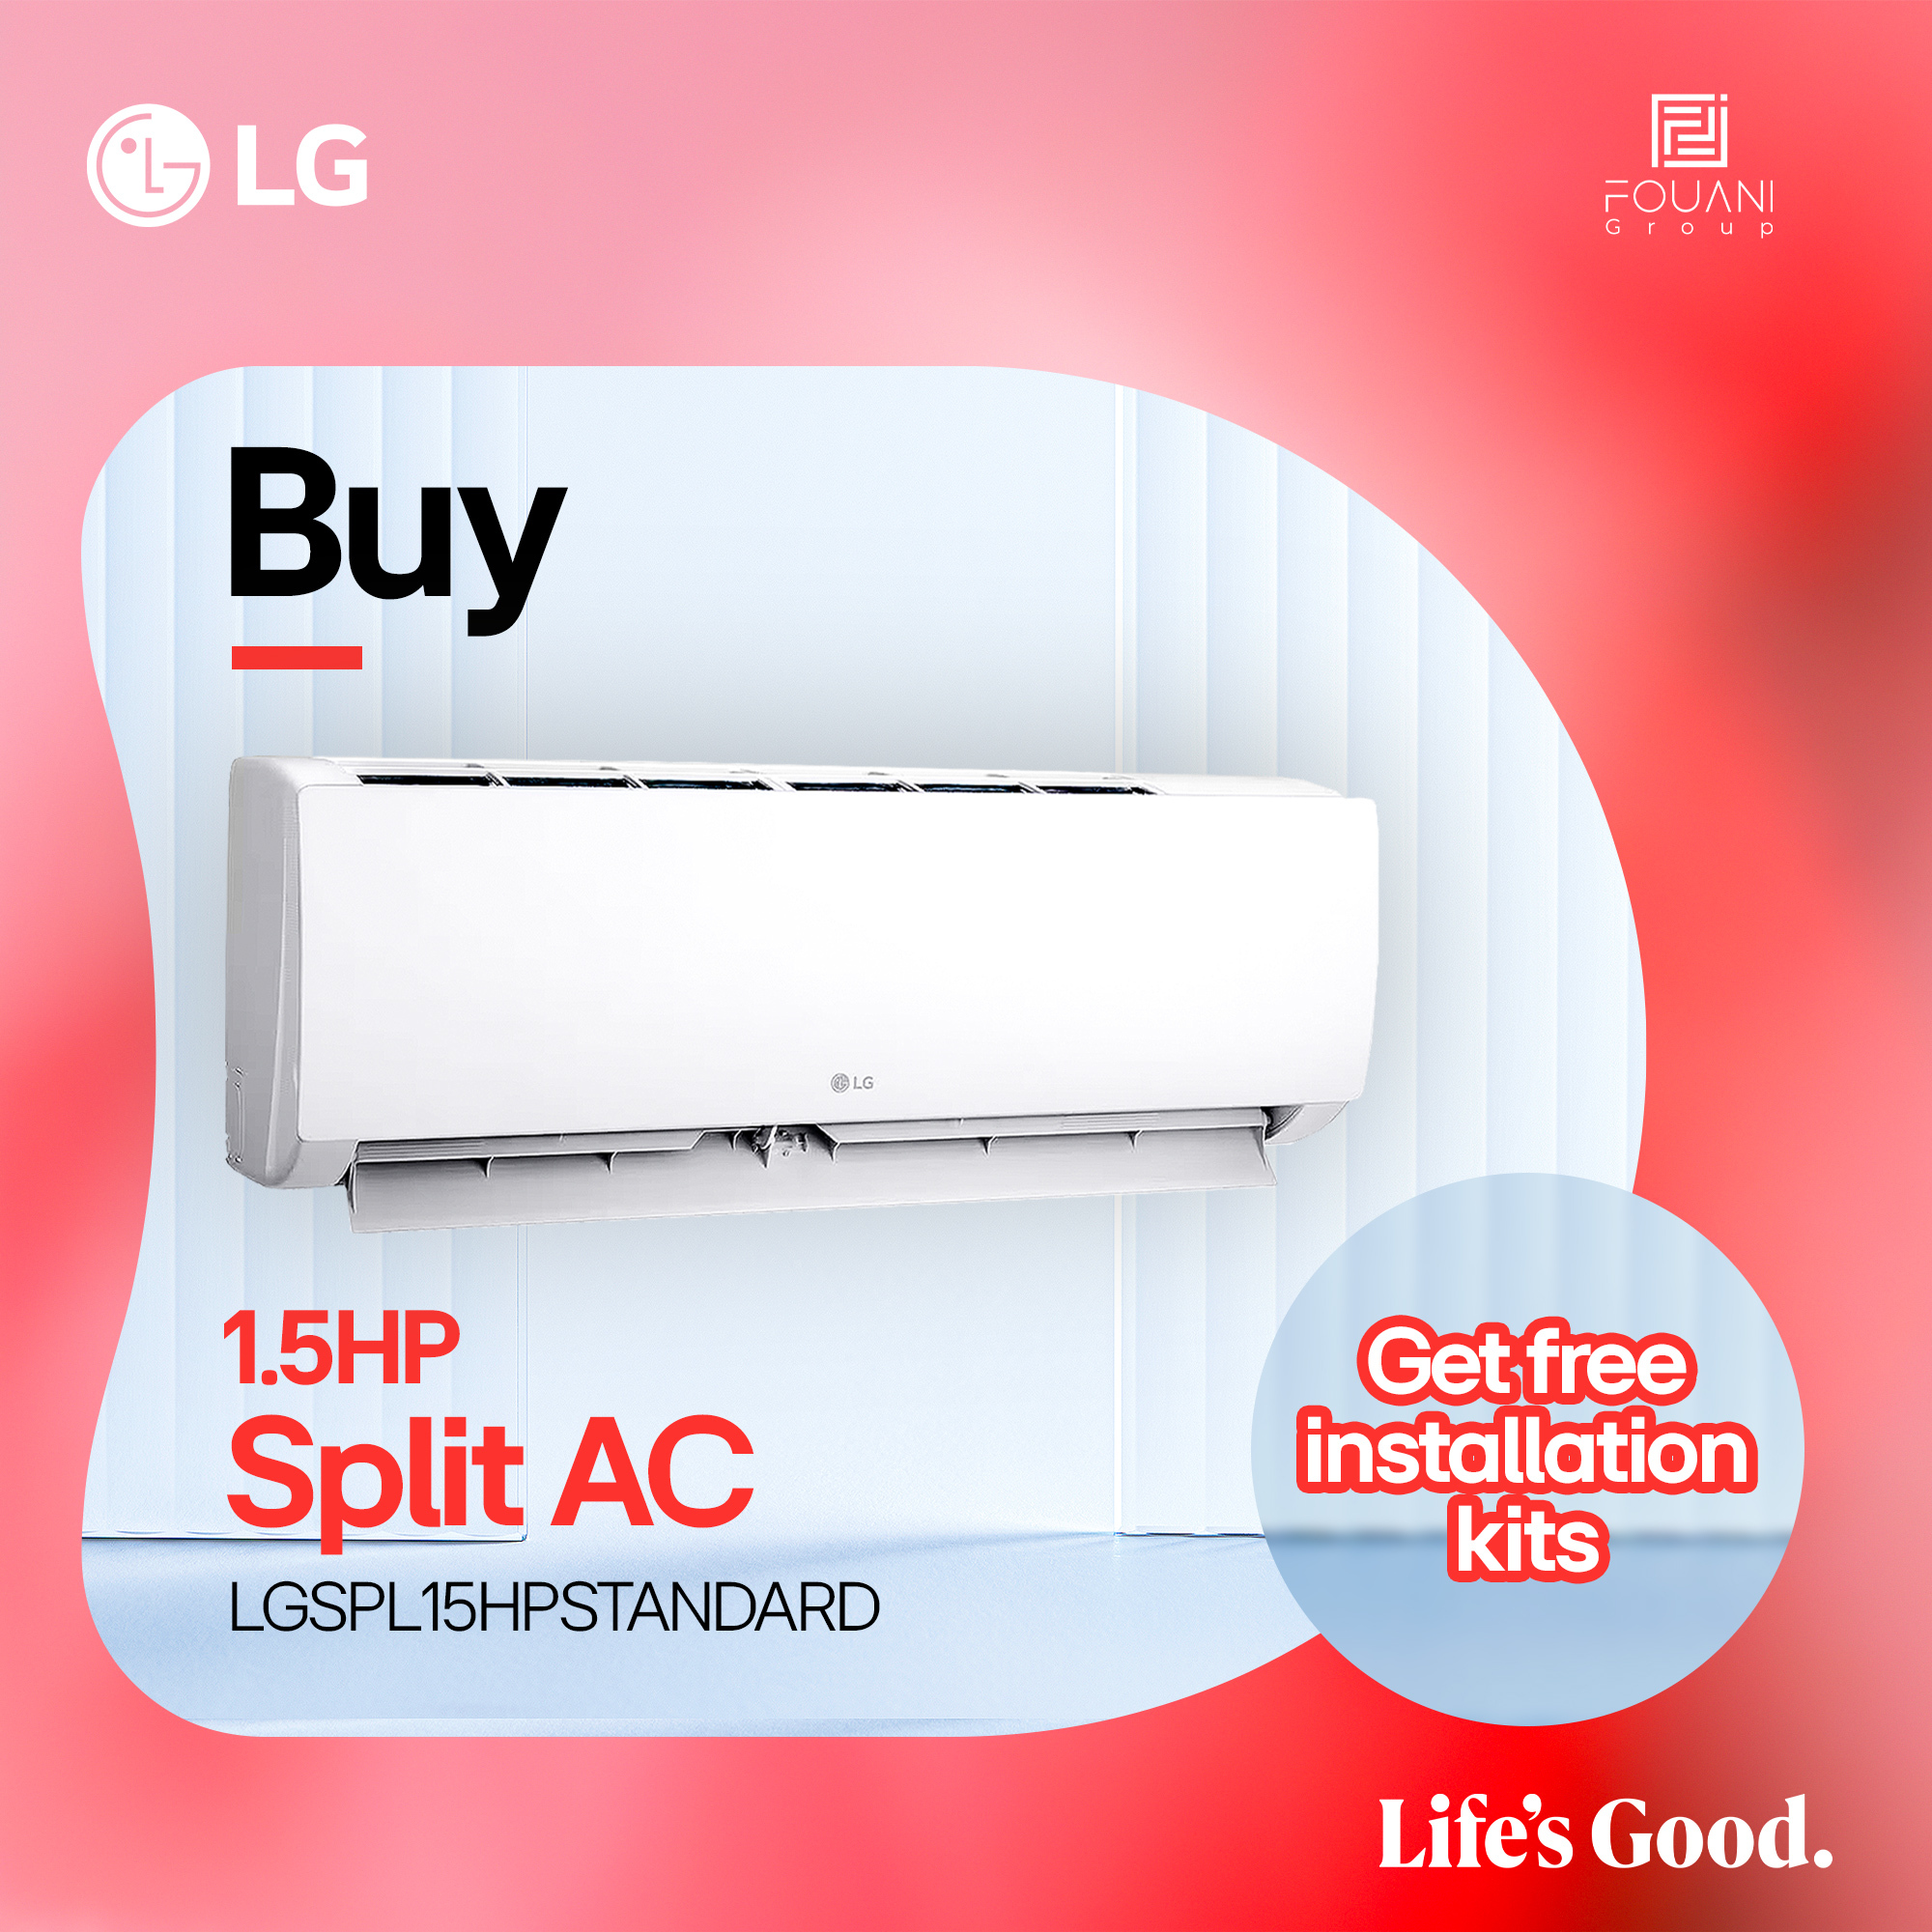 LG Split AC 1.5HP